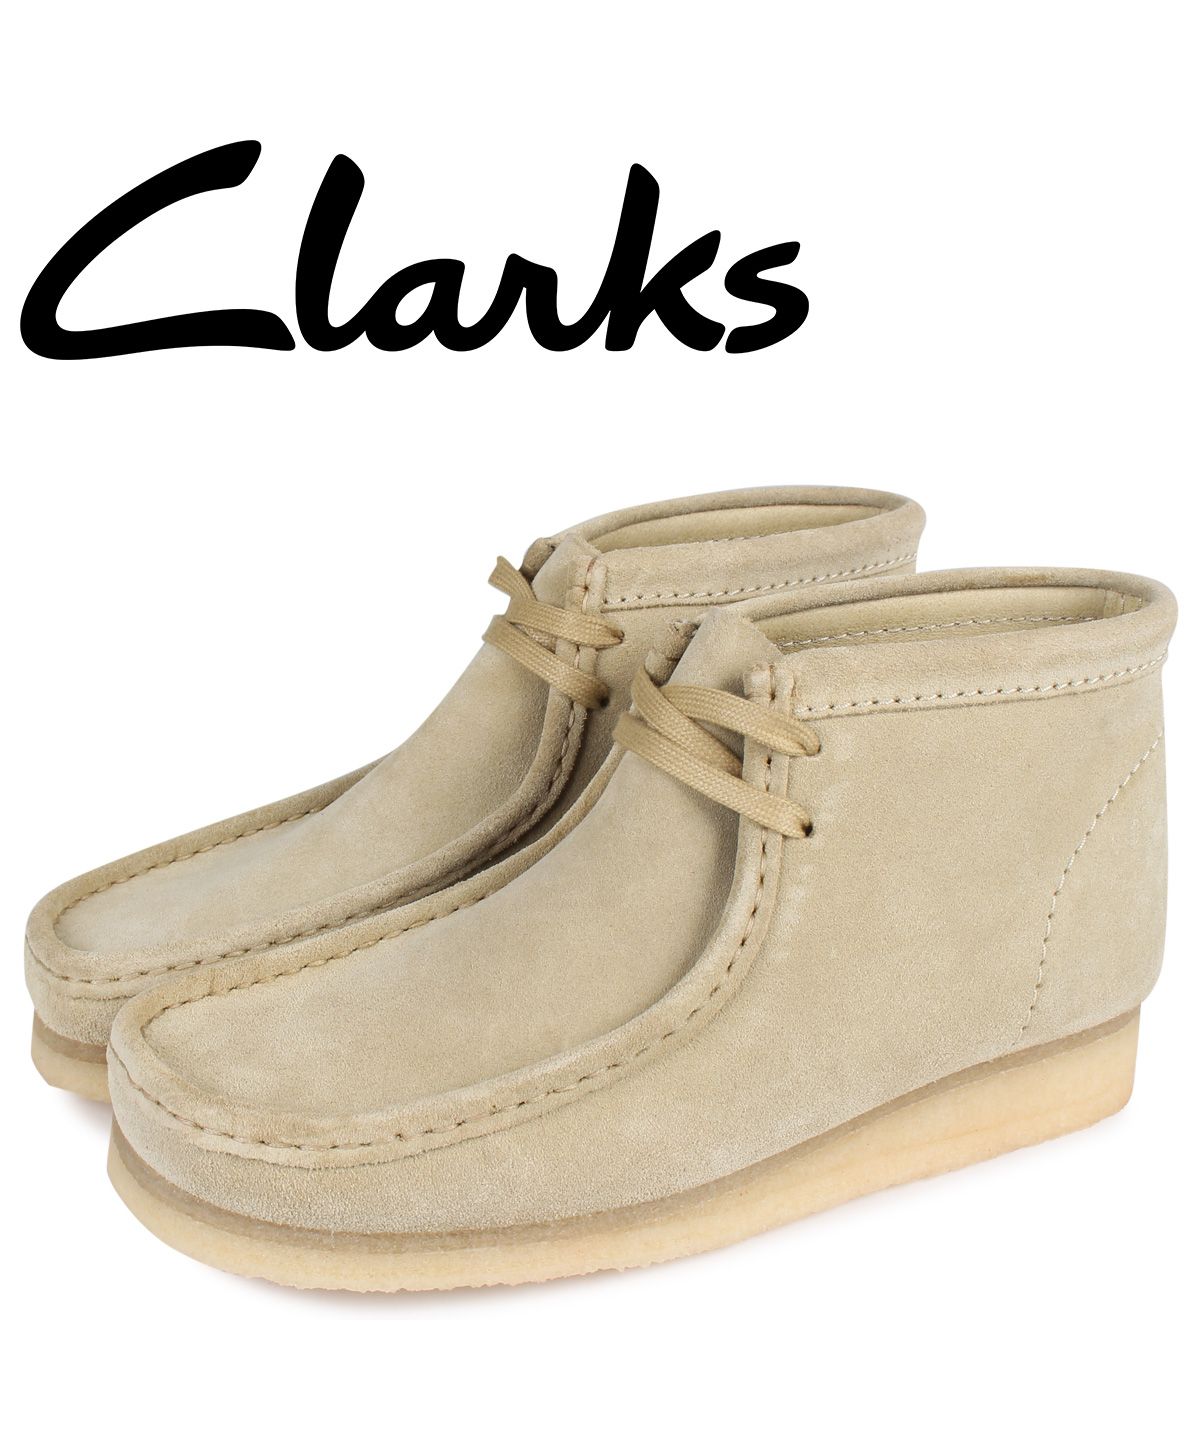 Clarks クラークスワラビー ブーツ スエード ベージュ